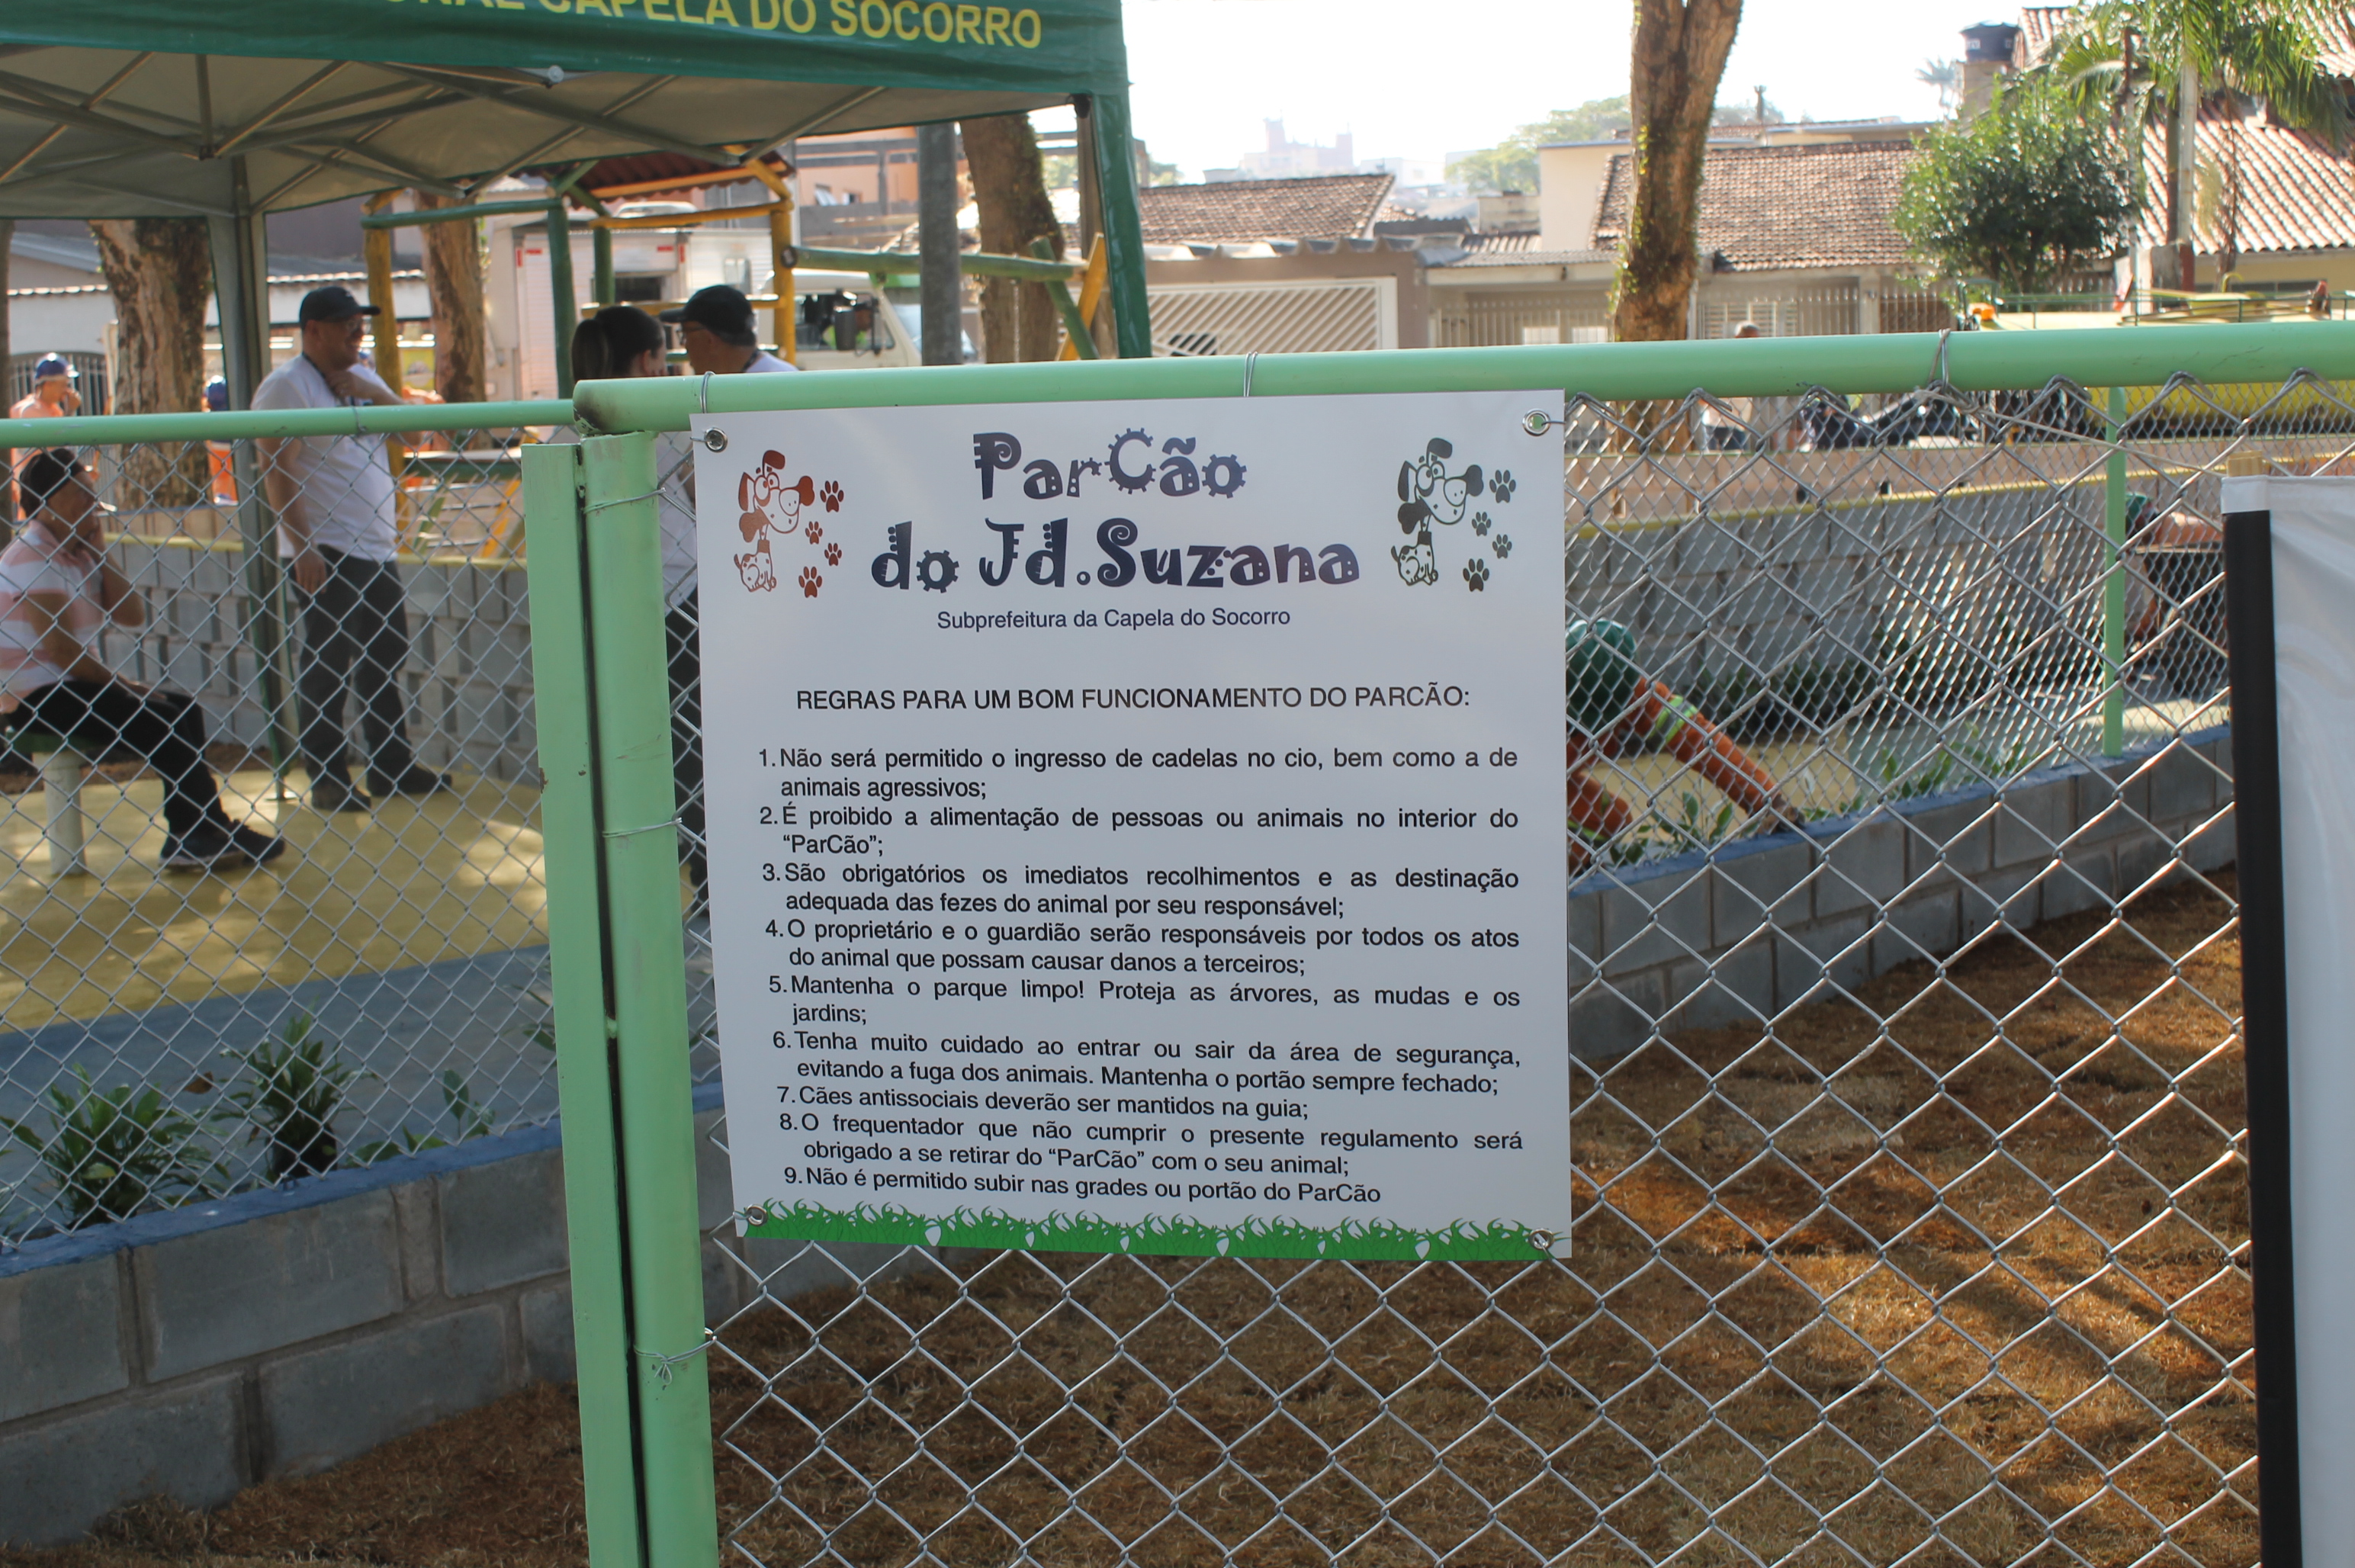 #PraCegoVer - Entrada do ParCão, o parque para Cães do Jardim Suzana, com placa em que se estabelecem as regras para uso do local.